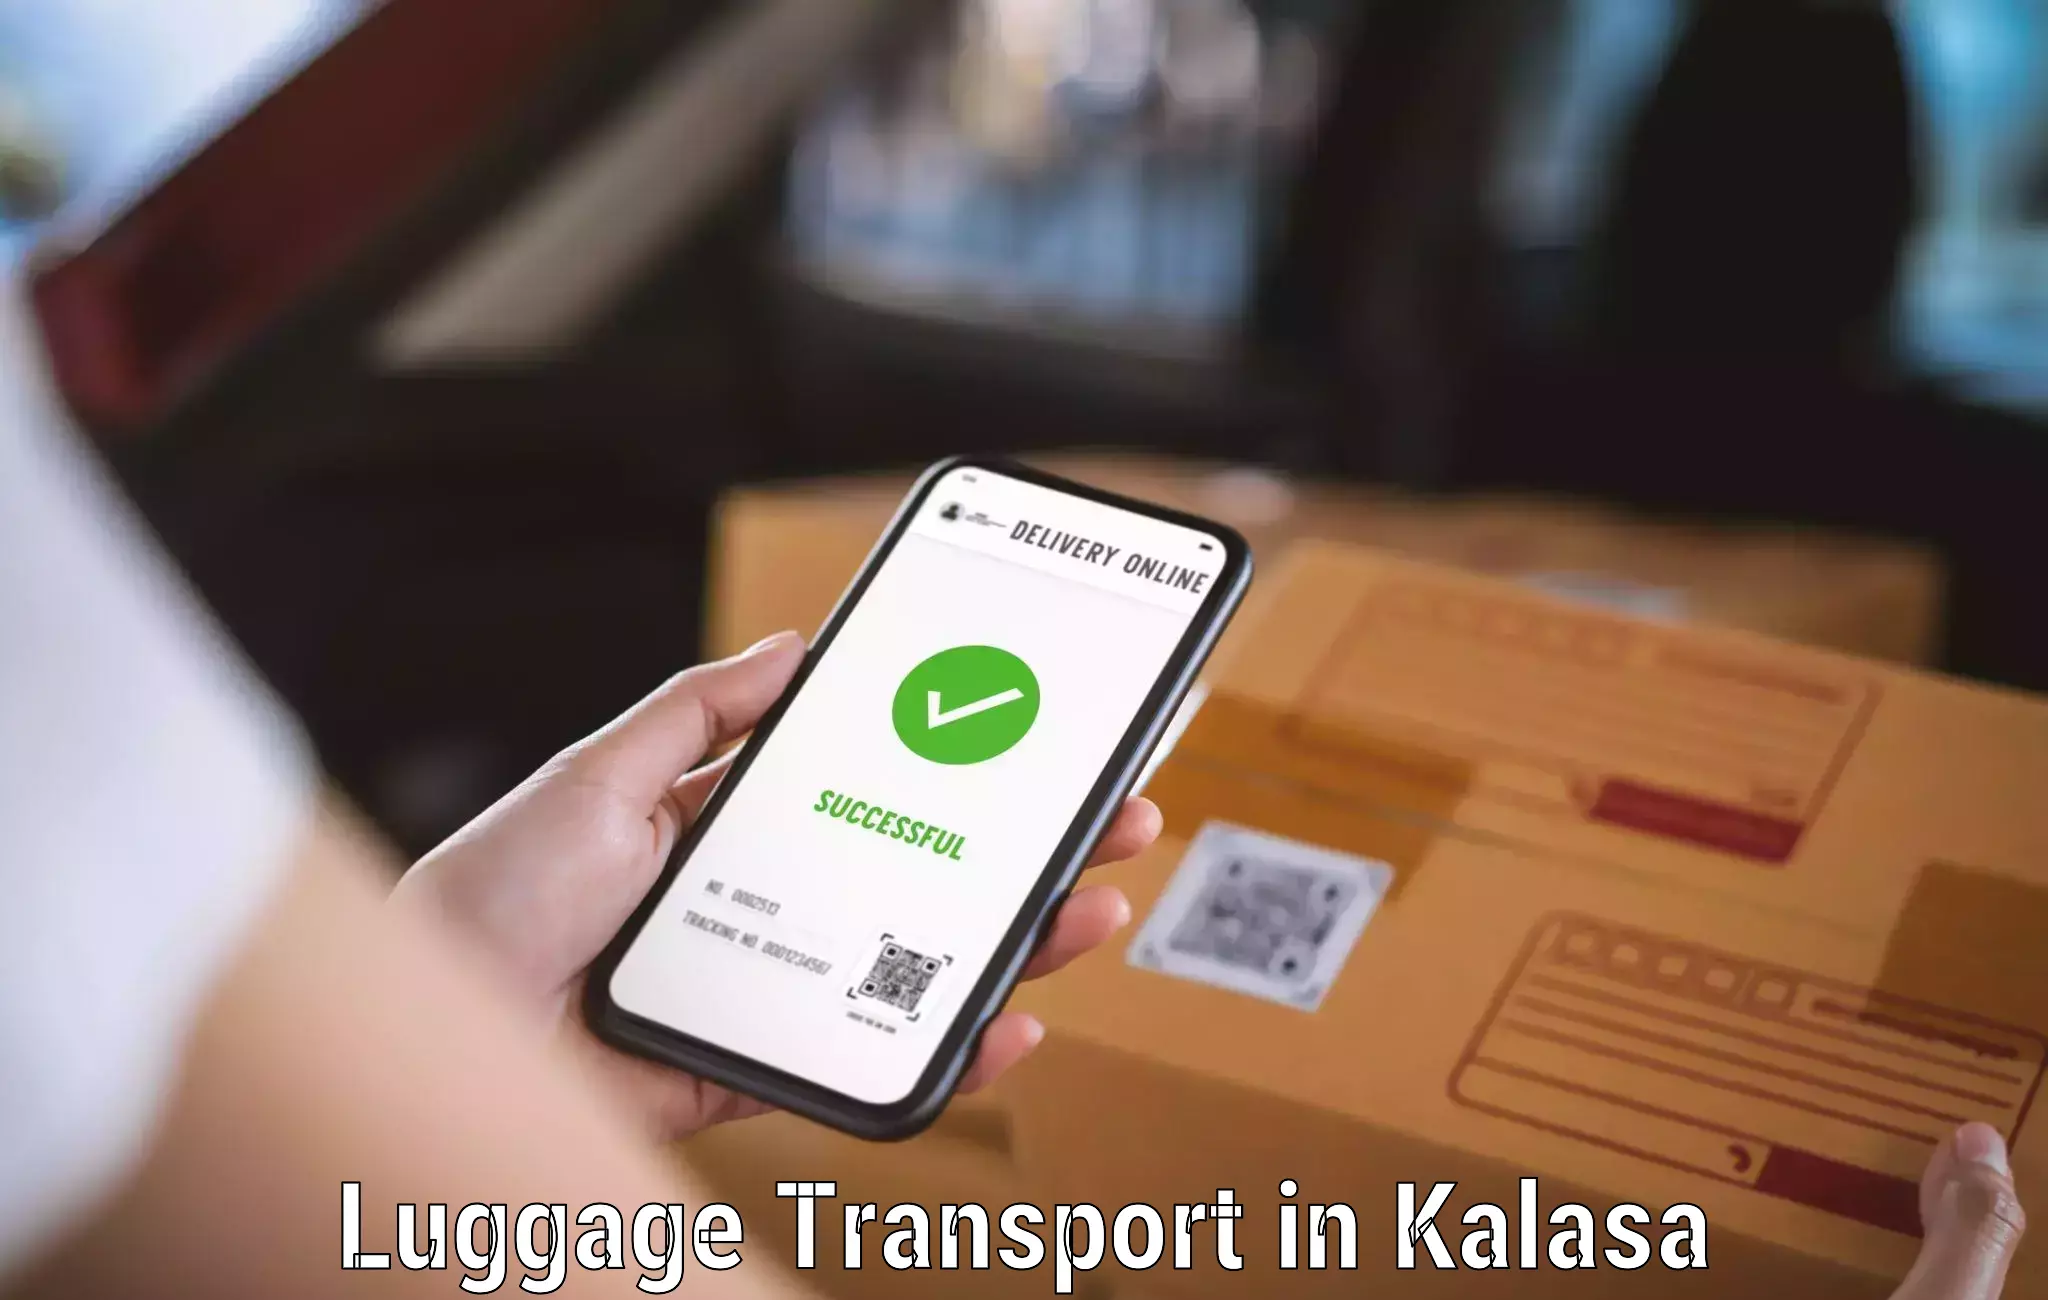 Baggage transport management in Kalasa